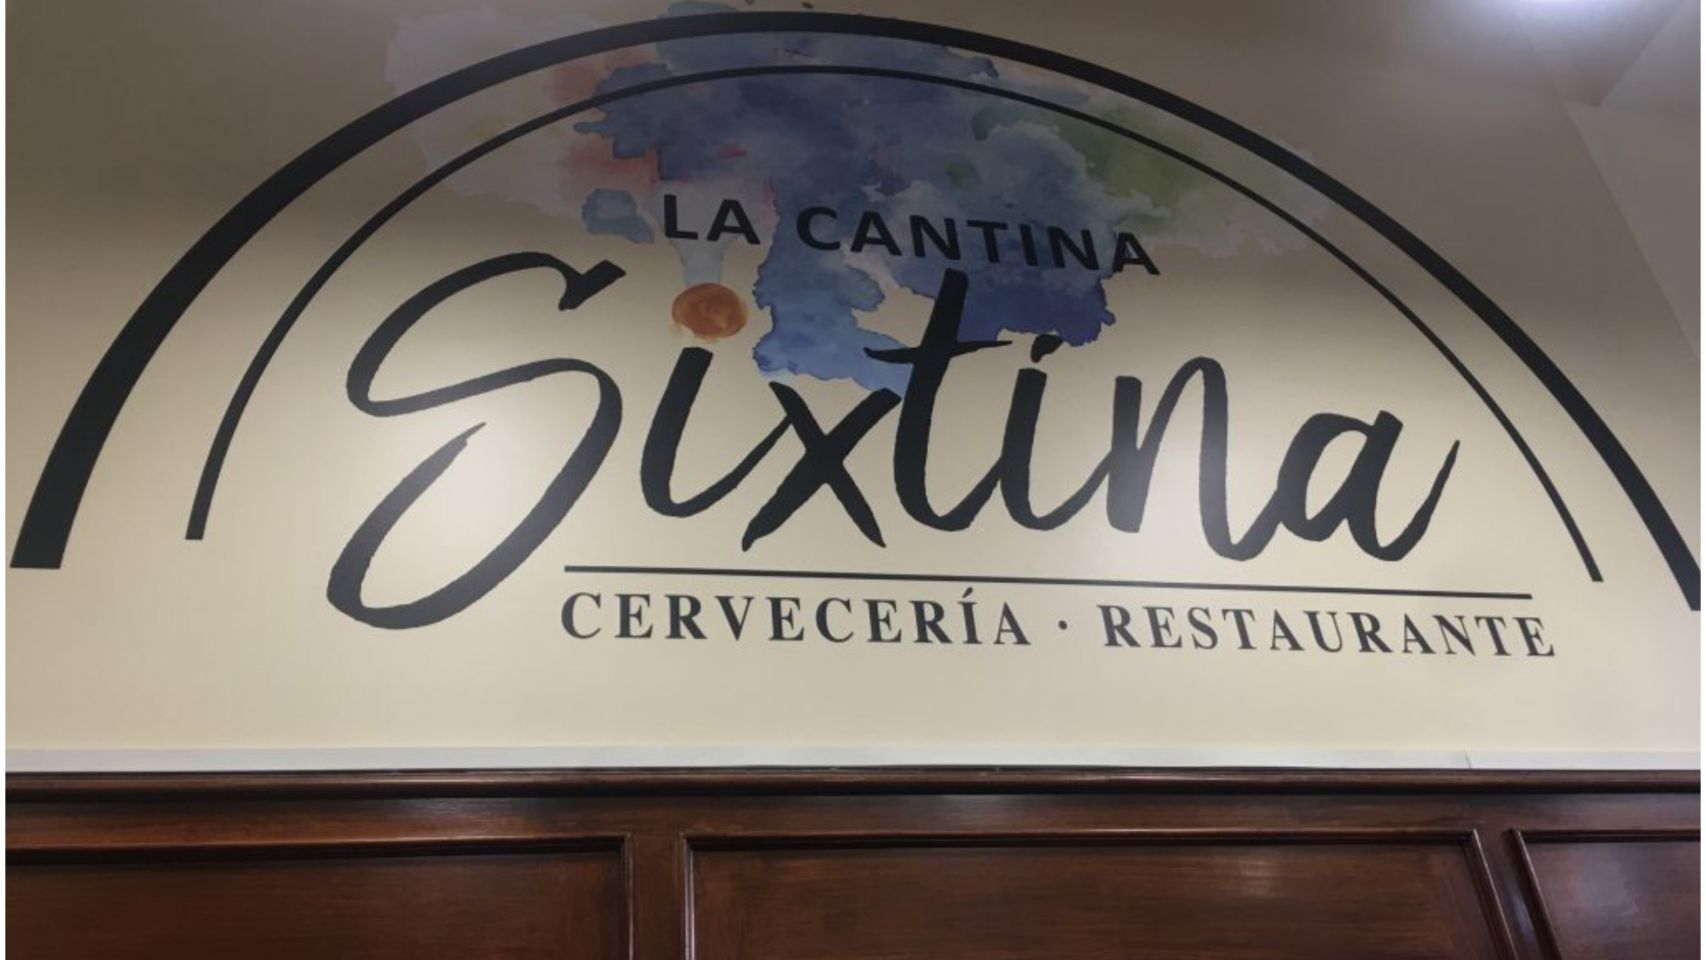 Restaurante La Cantina Sixtina.